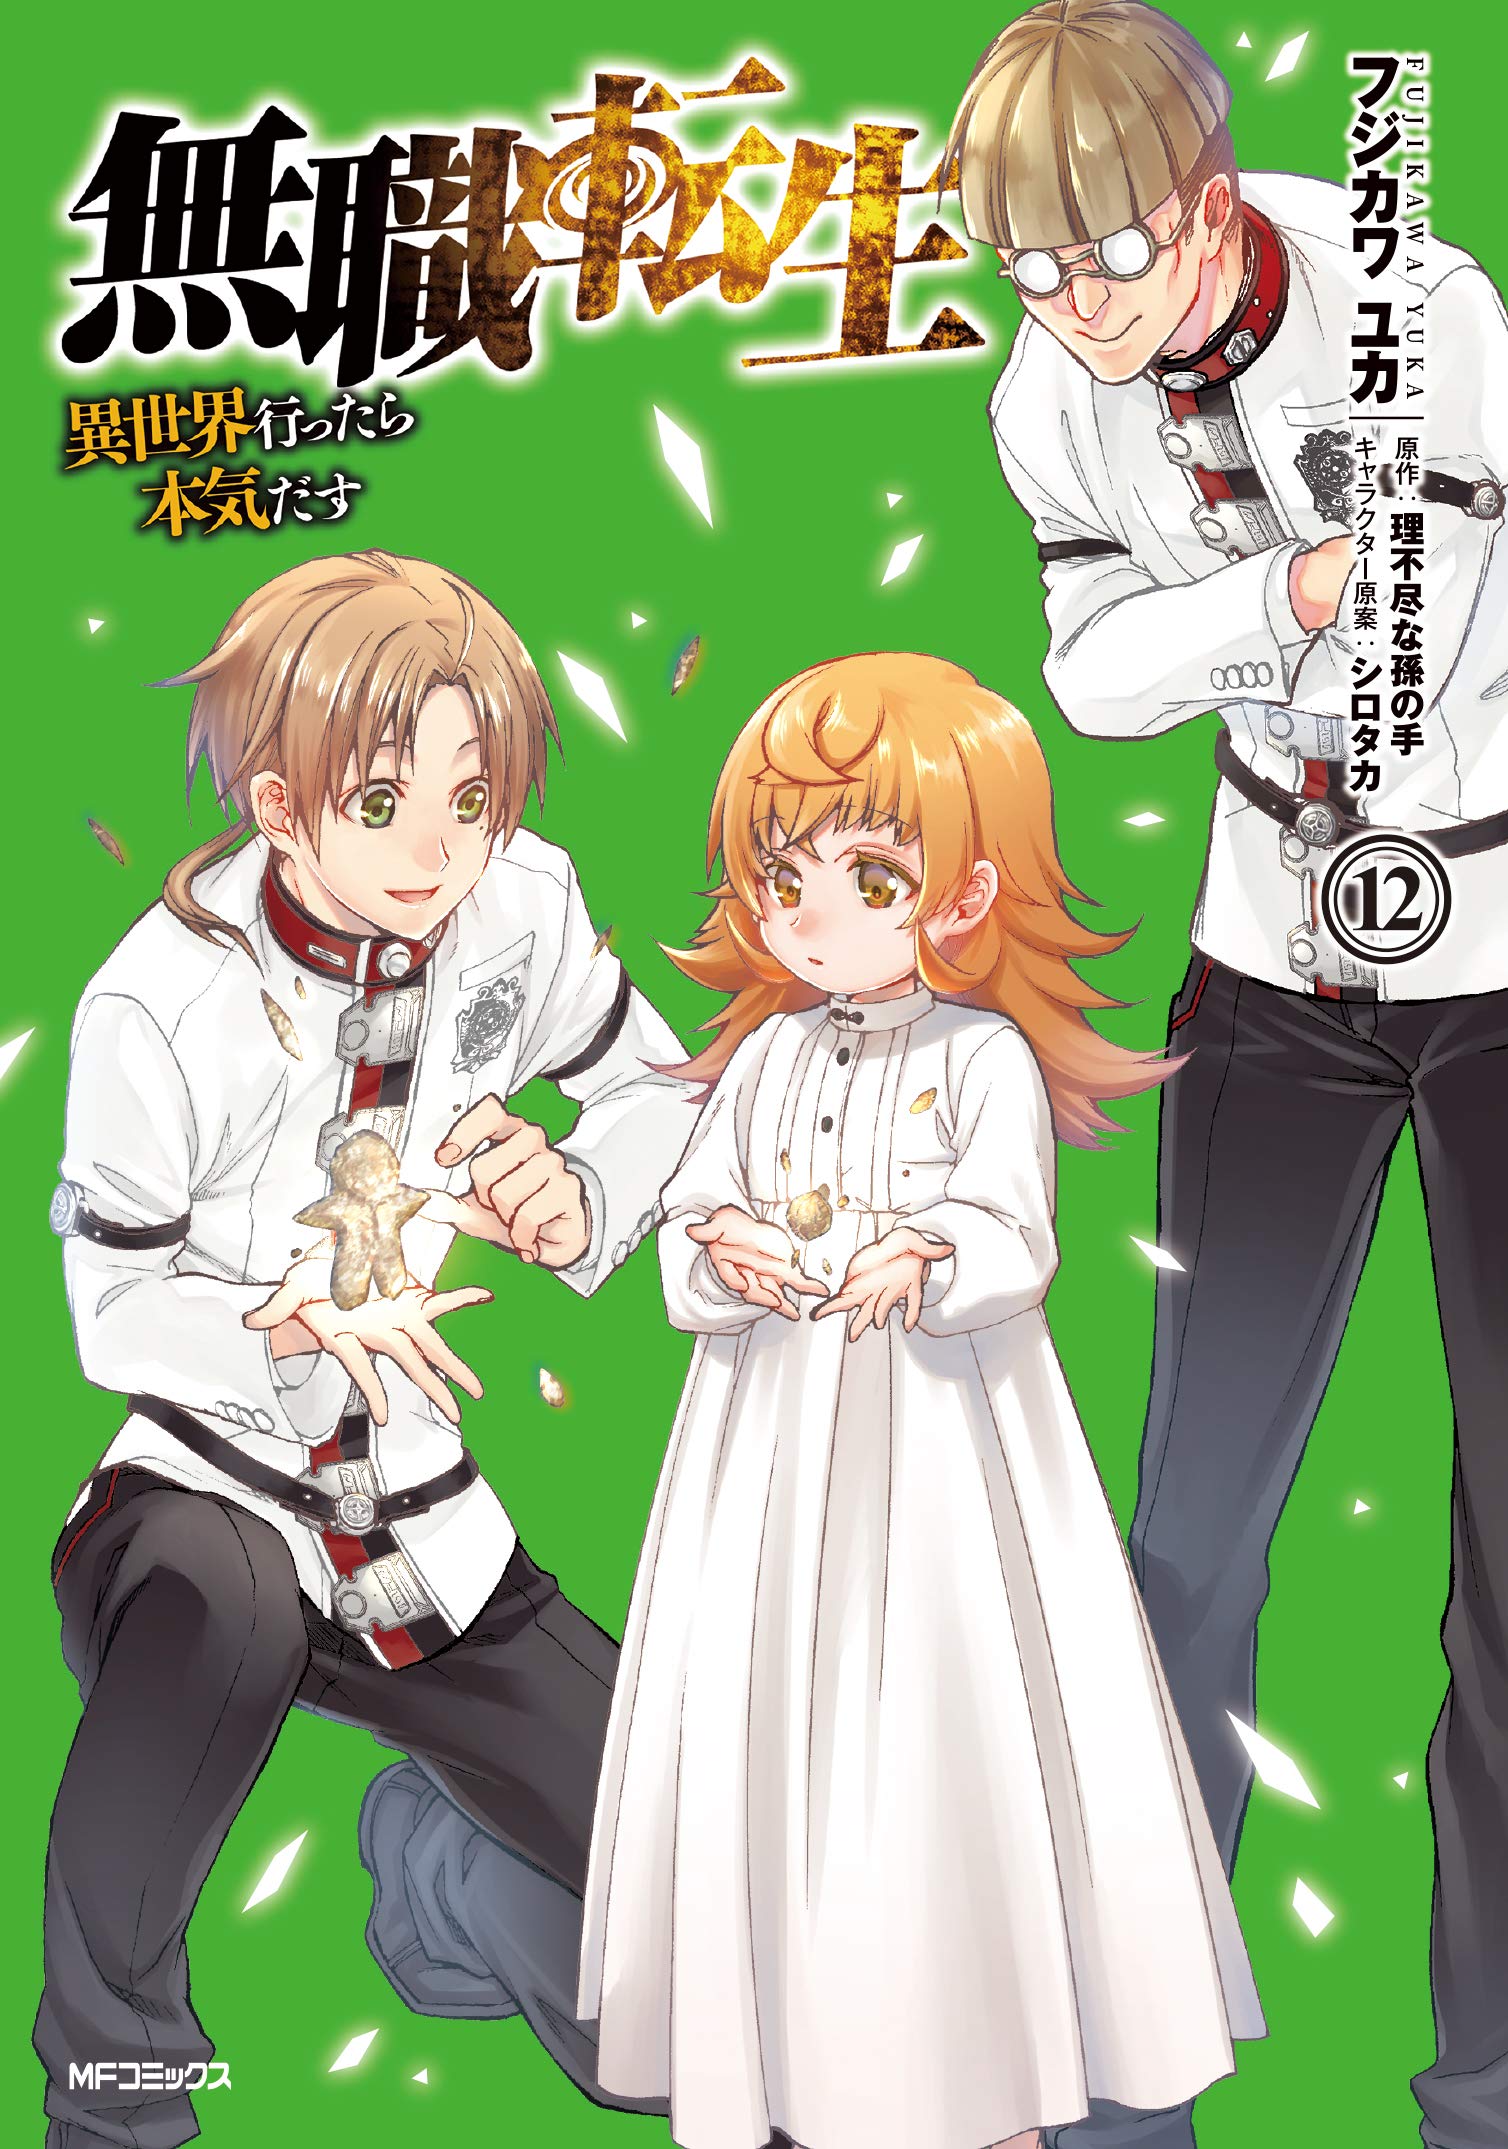 Manga Volume 12 Mushoku Tensei Wiki Fandom